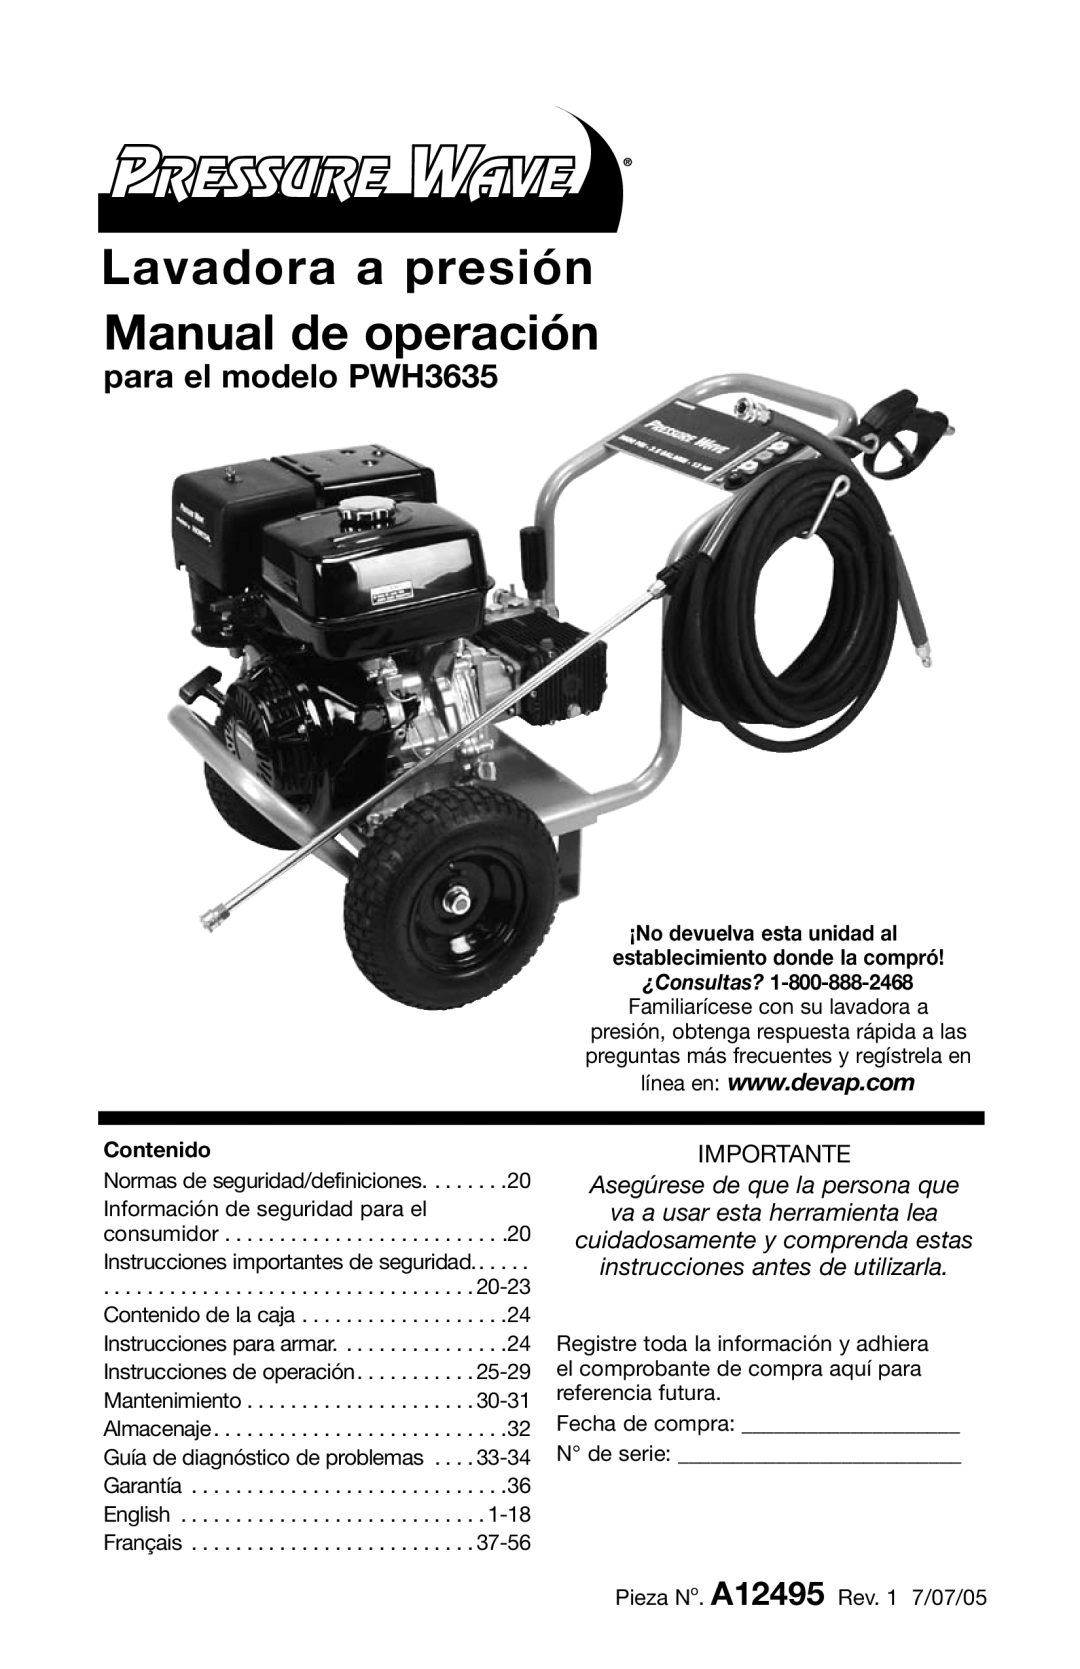 DeVillbiss Air Power Company A12495 operation manual Lavadora a presión Manual de operación, para el modelo PWH3635 